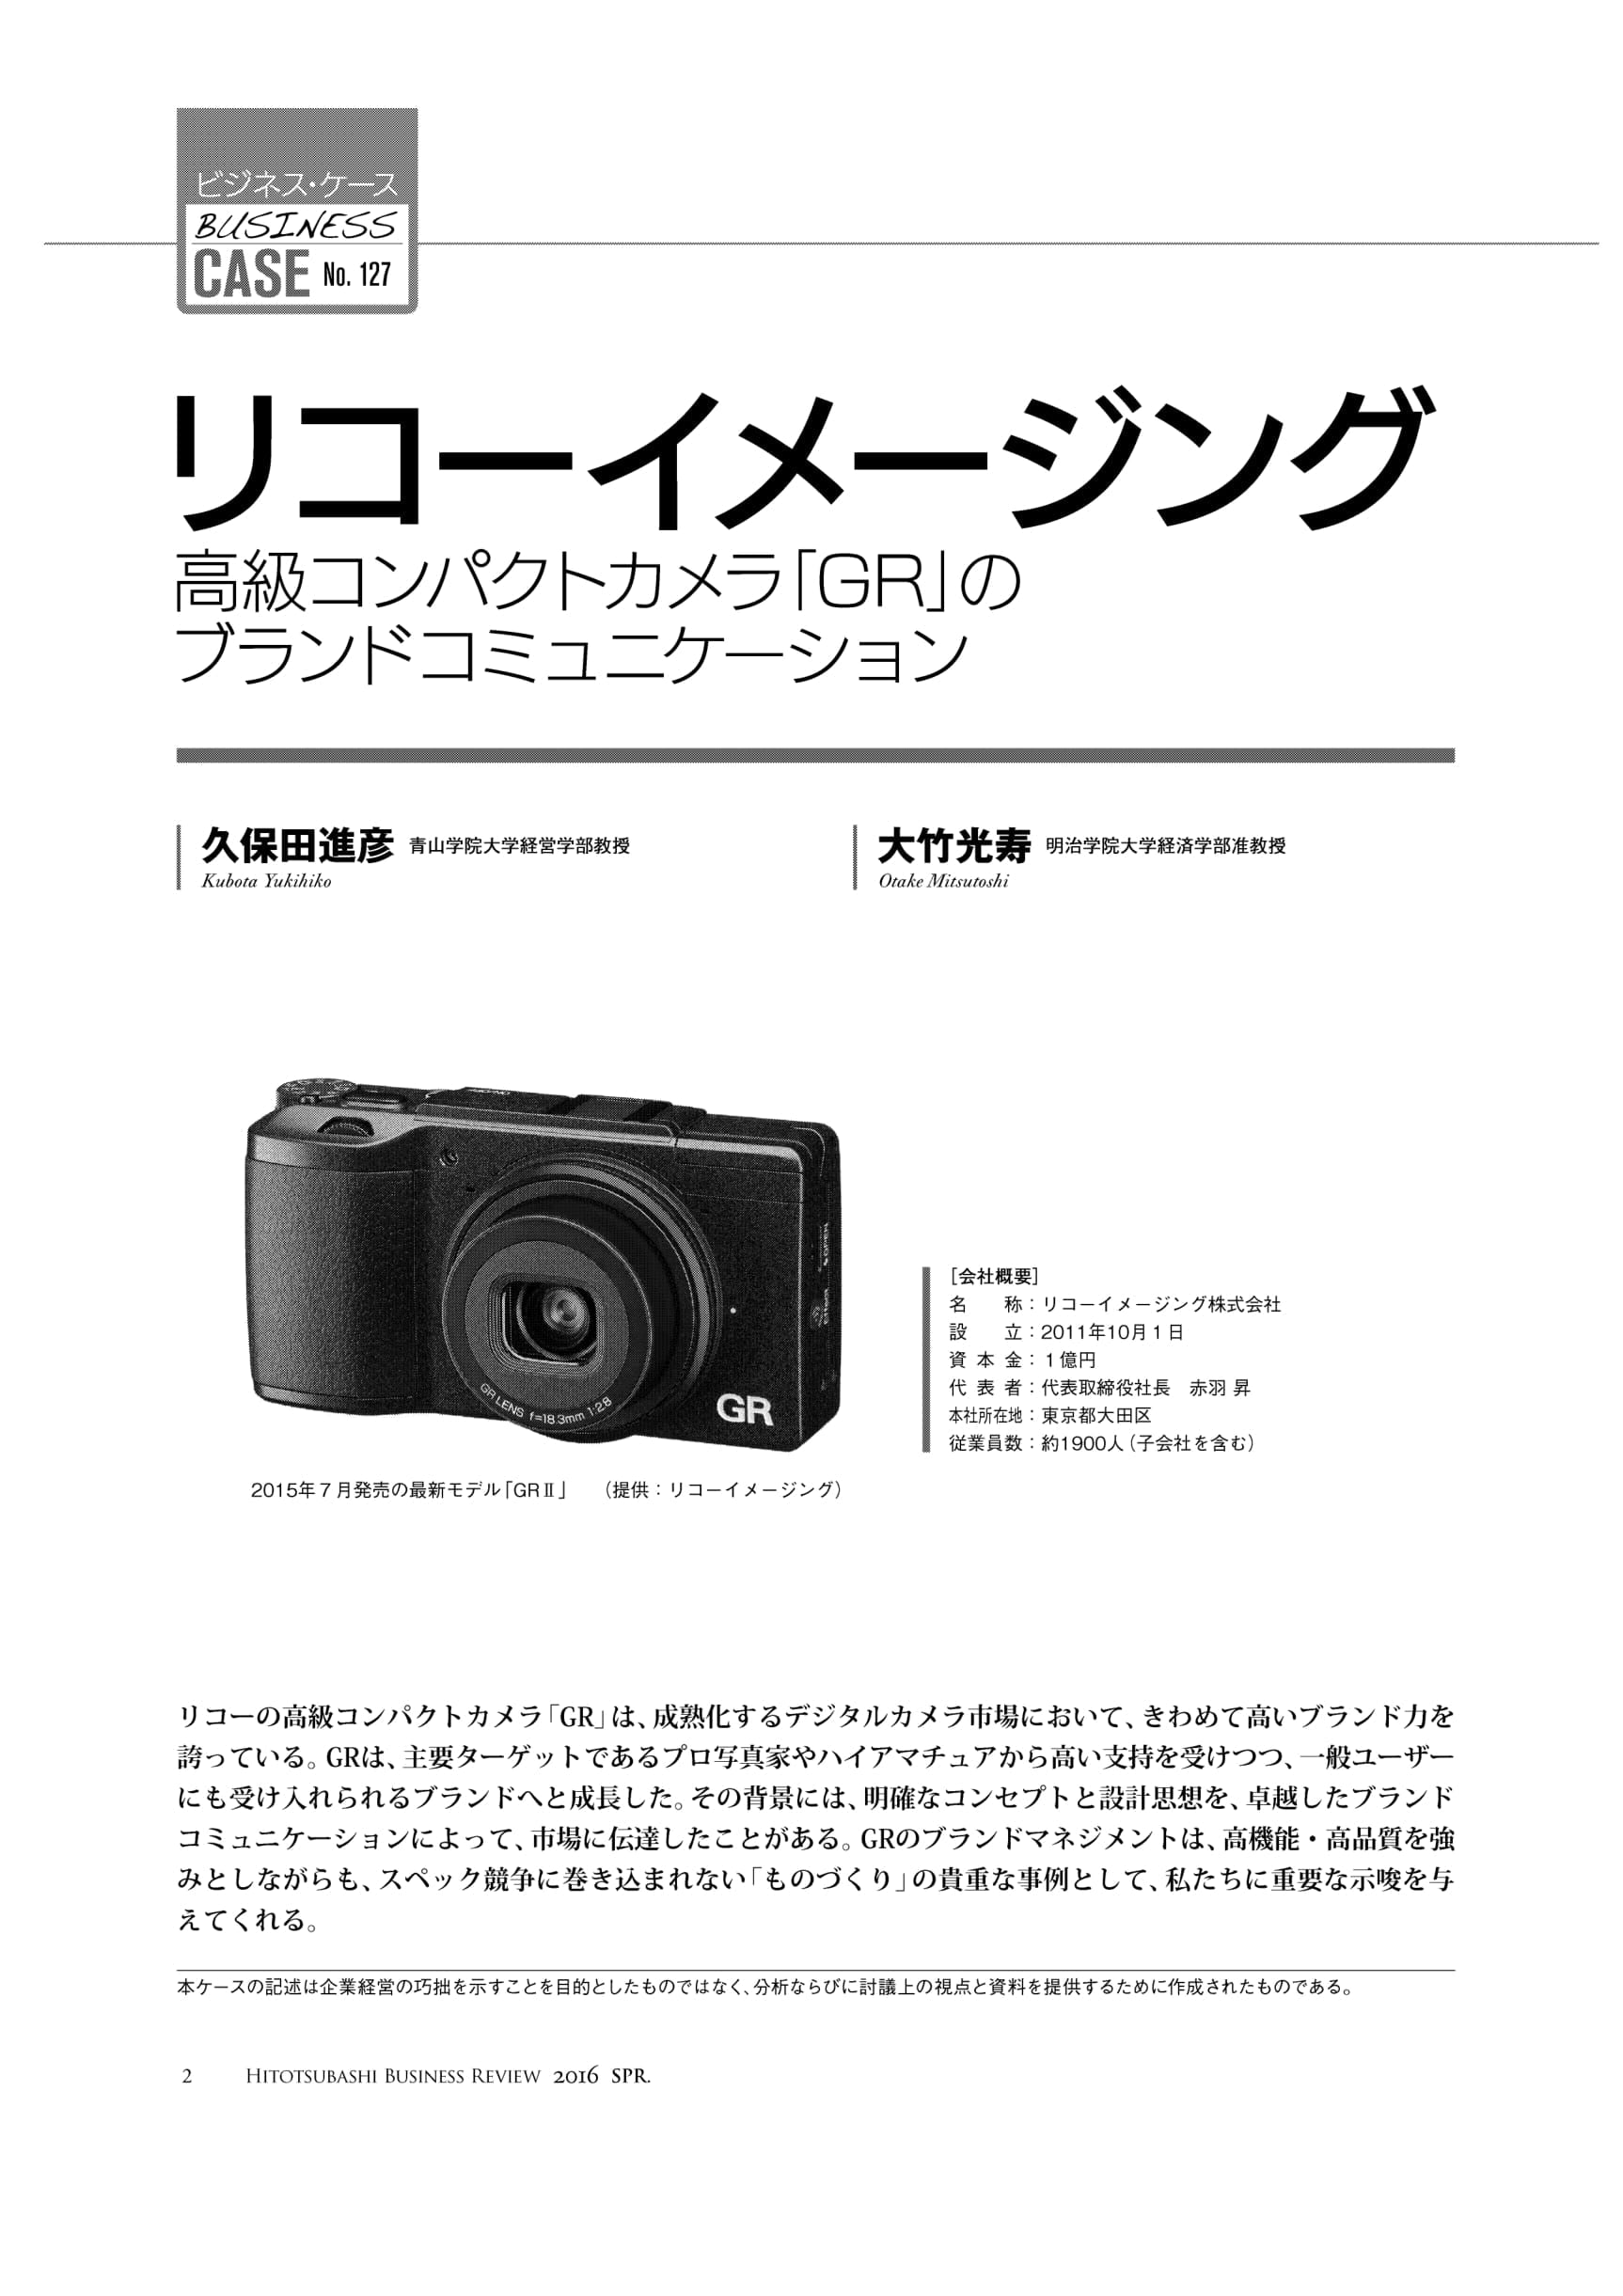 リコーイメージング　Review　Hitotsubashi　高級コンパクトカメラ「GR」のブランドコミュニケーション　–　Business